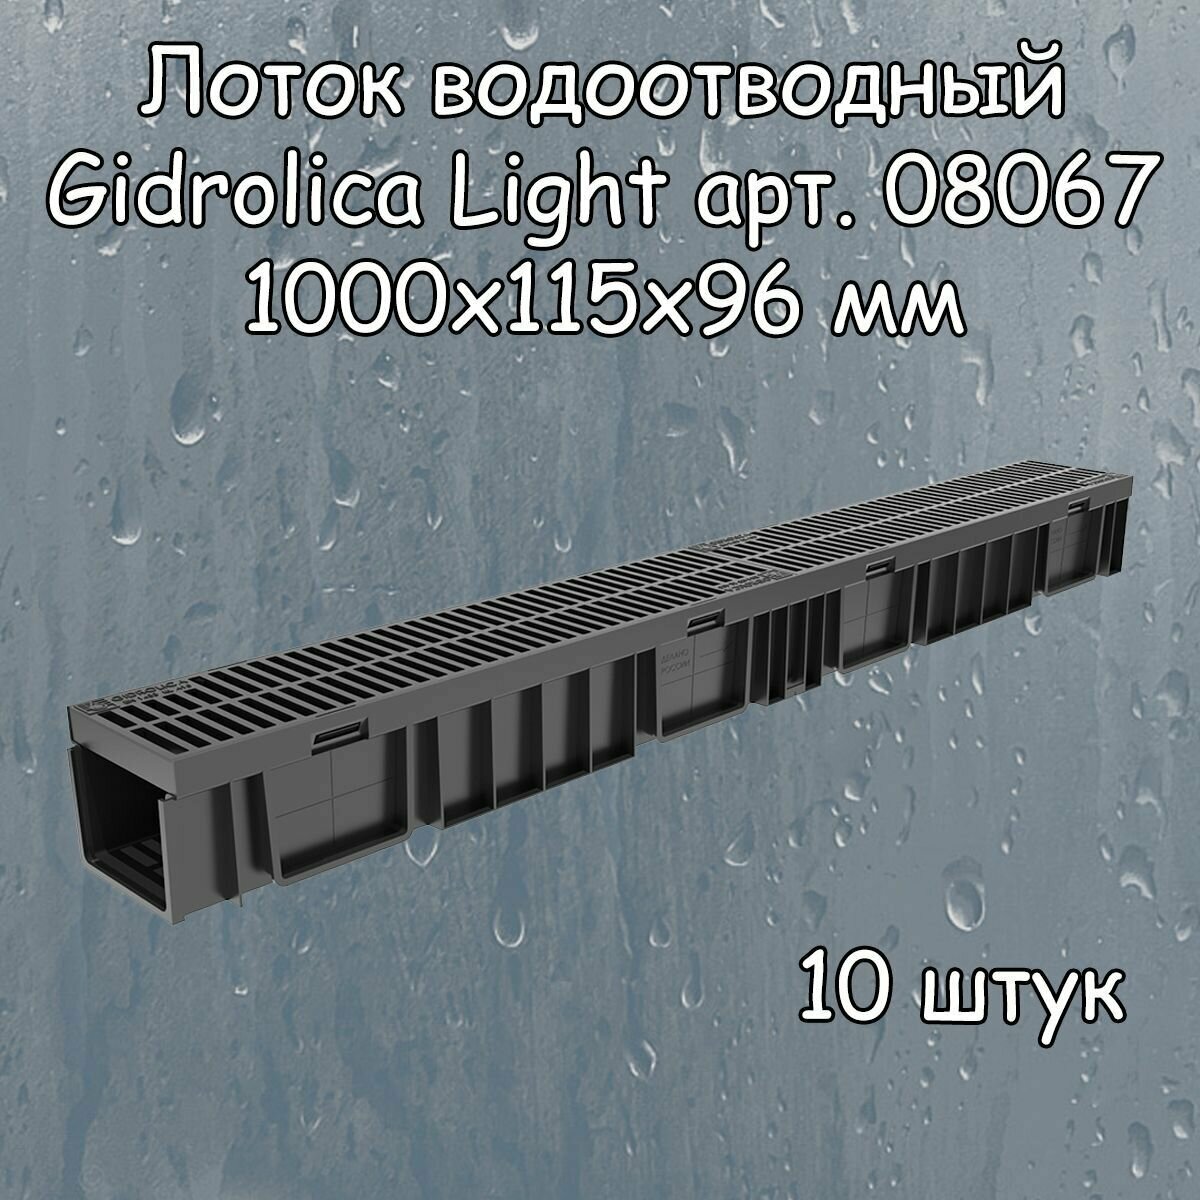 10 штук лоток водоотводный 1000х115х96 мм Gidrolica Light с решеткой пластиковой щелевой DN100 (А15), артикул 08067, черный - фотография № 1